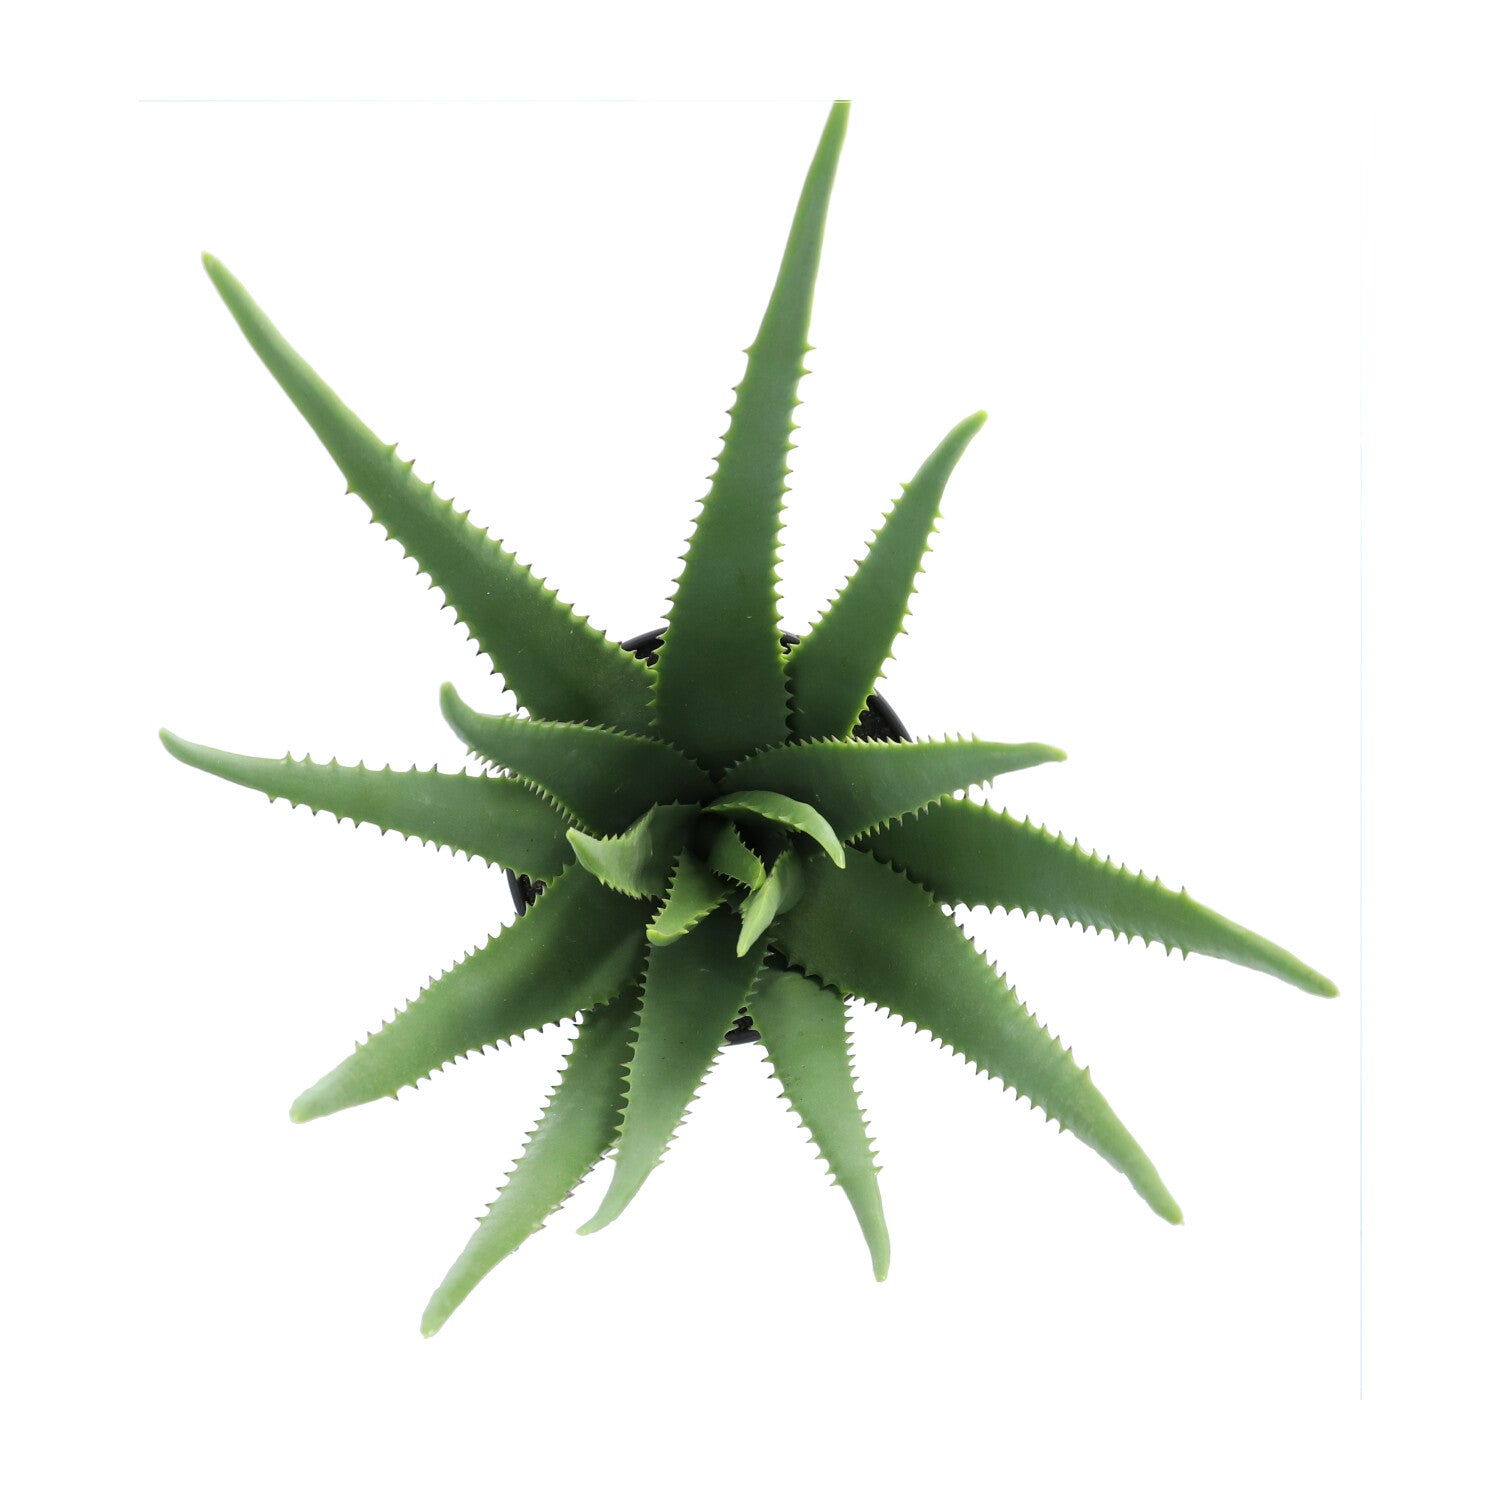 Kopu® Kunstplant Aloe Vera 55 cm in zwarte Bloempot - 17 bladeren